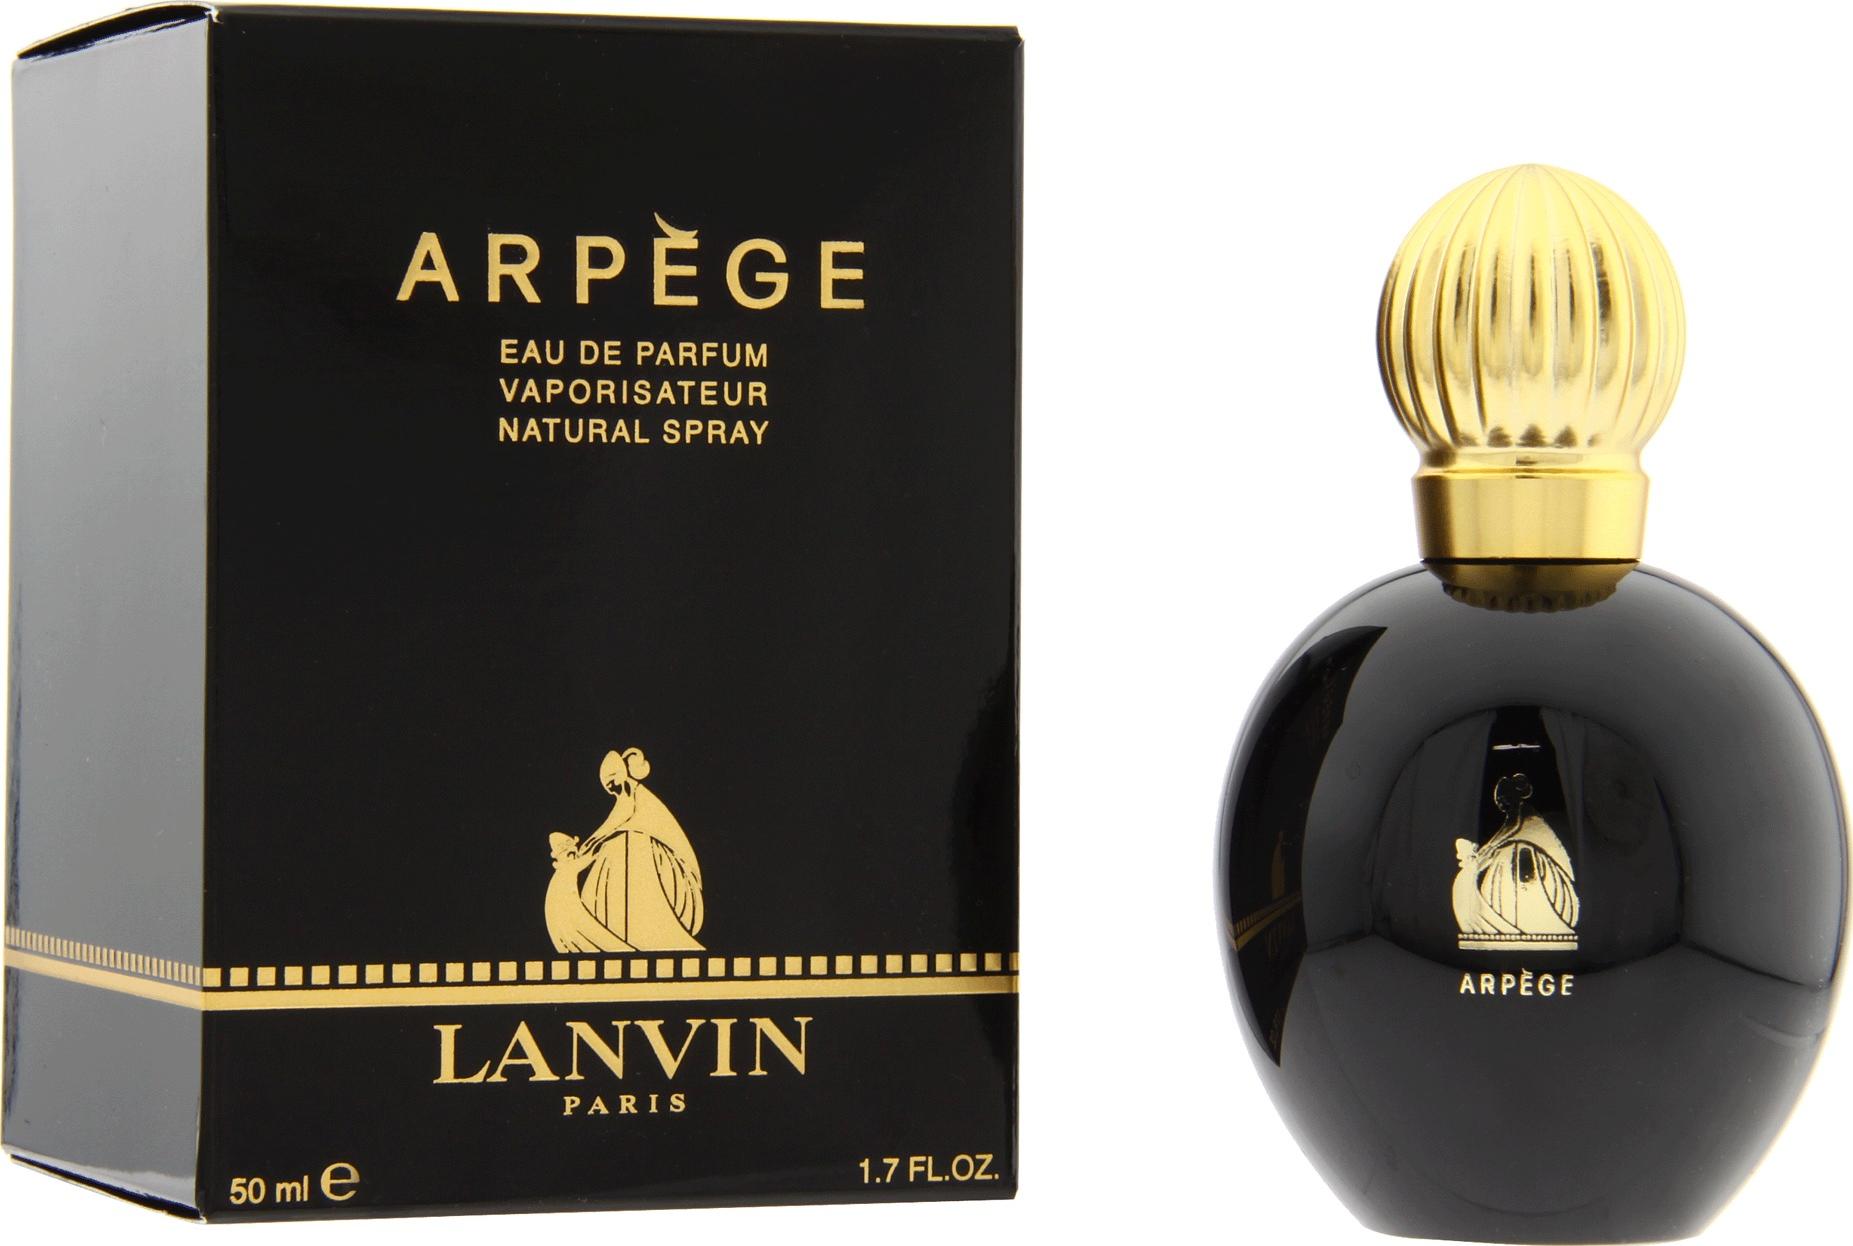 EAN 3139093044985 product image for Arpege By Lanvin For Women Eau De Parfum Spray 1.7 Oz | upcitemdb.com